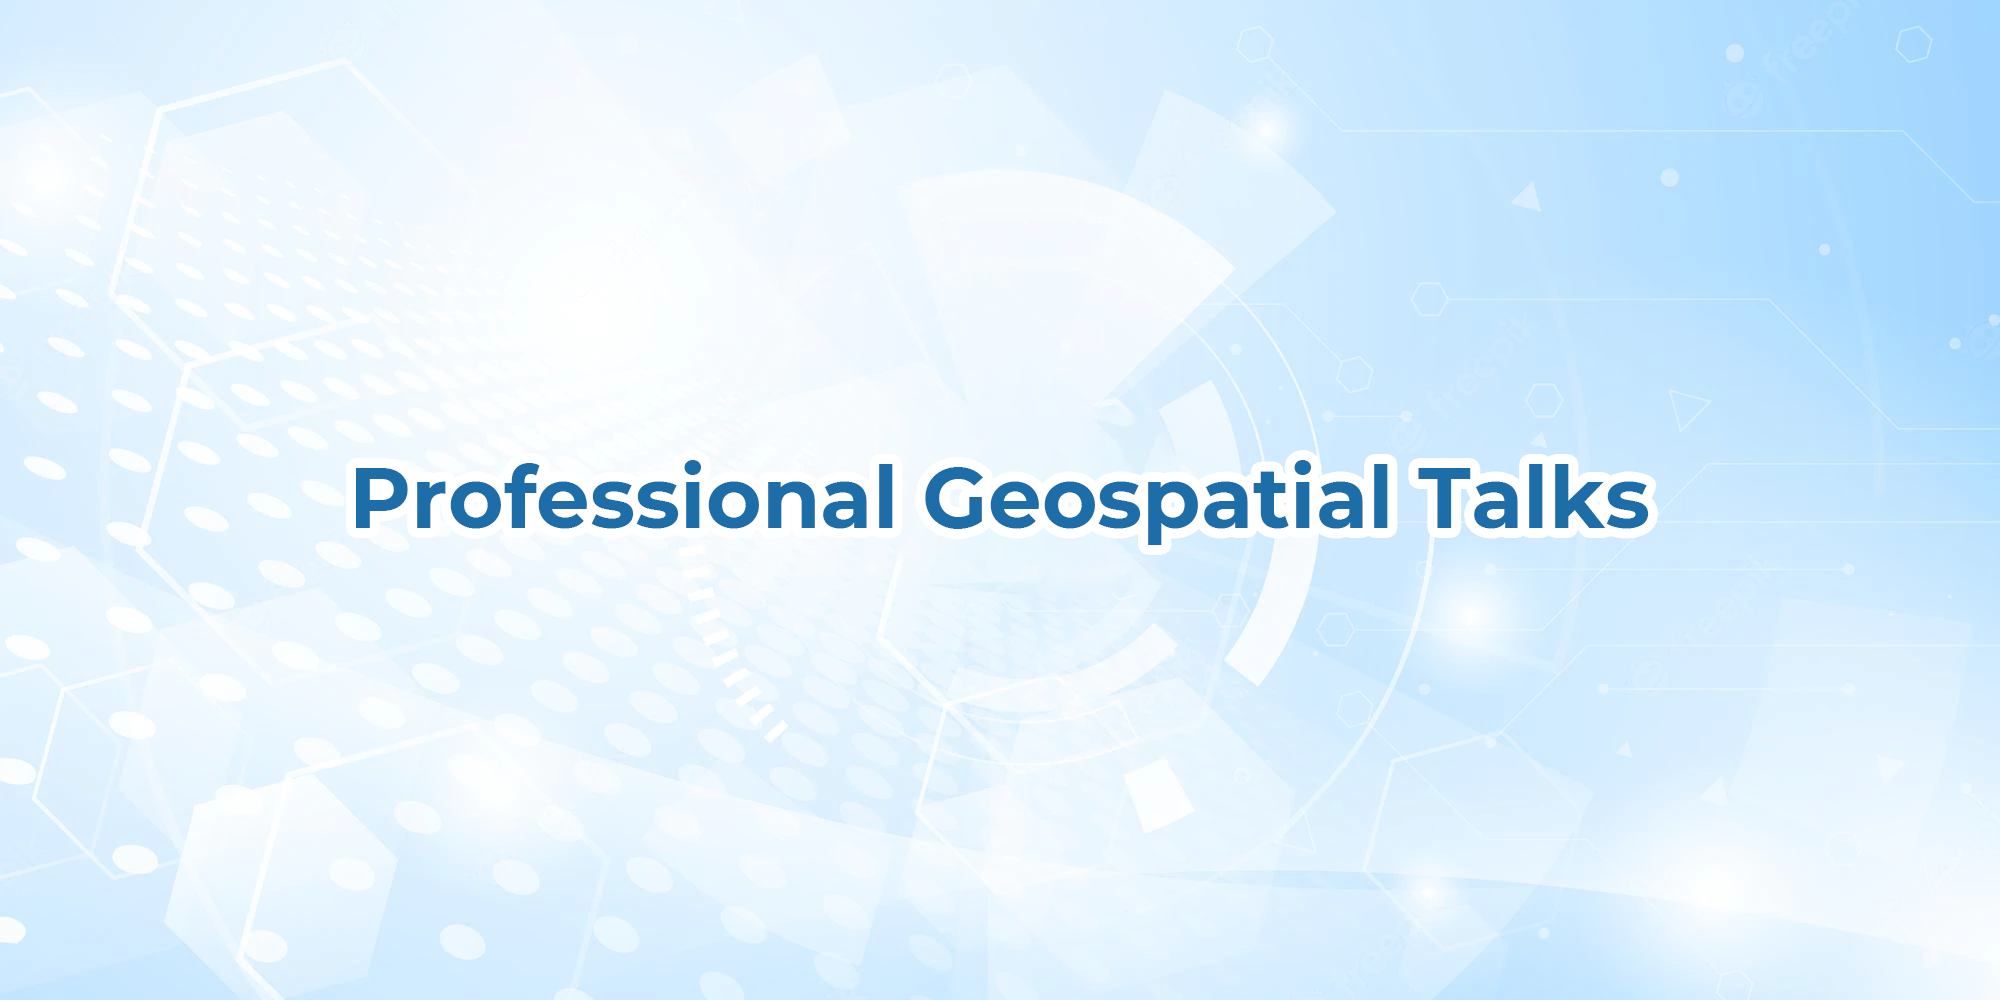 Professional Geospatial Talks